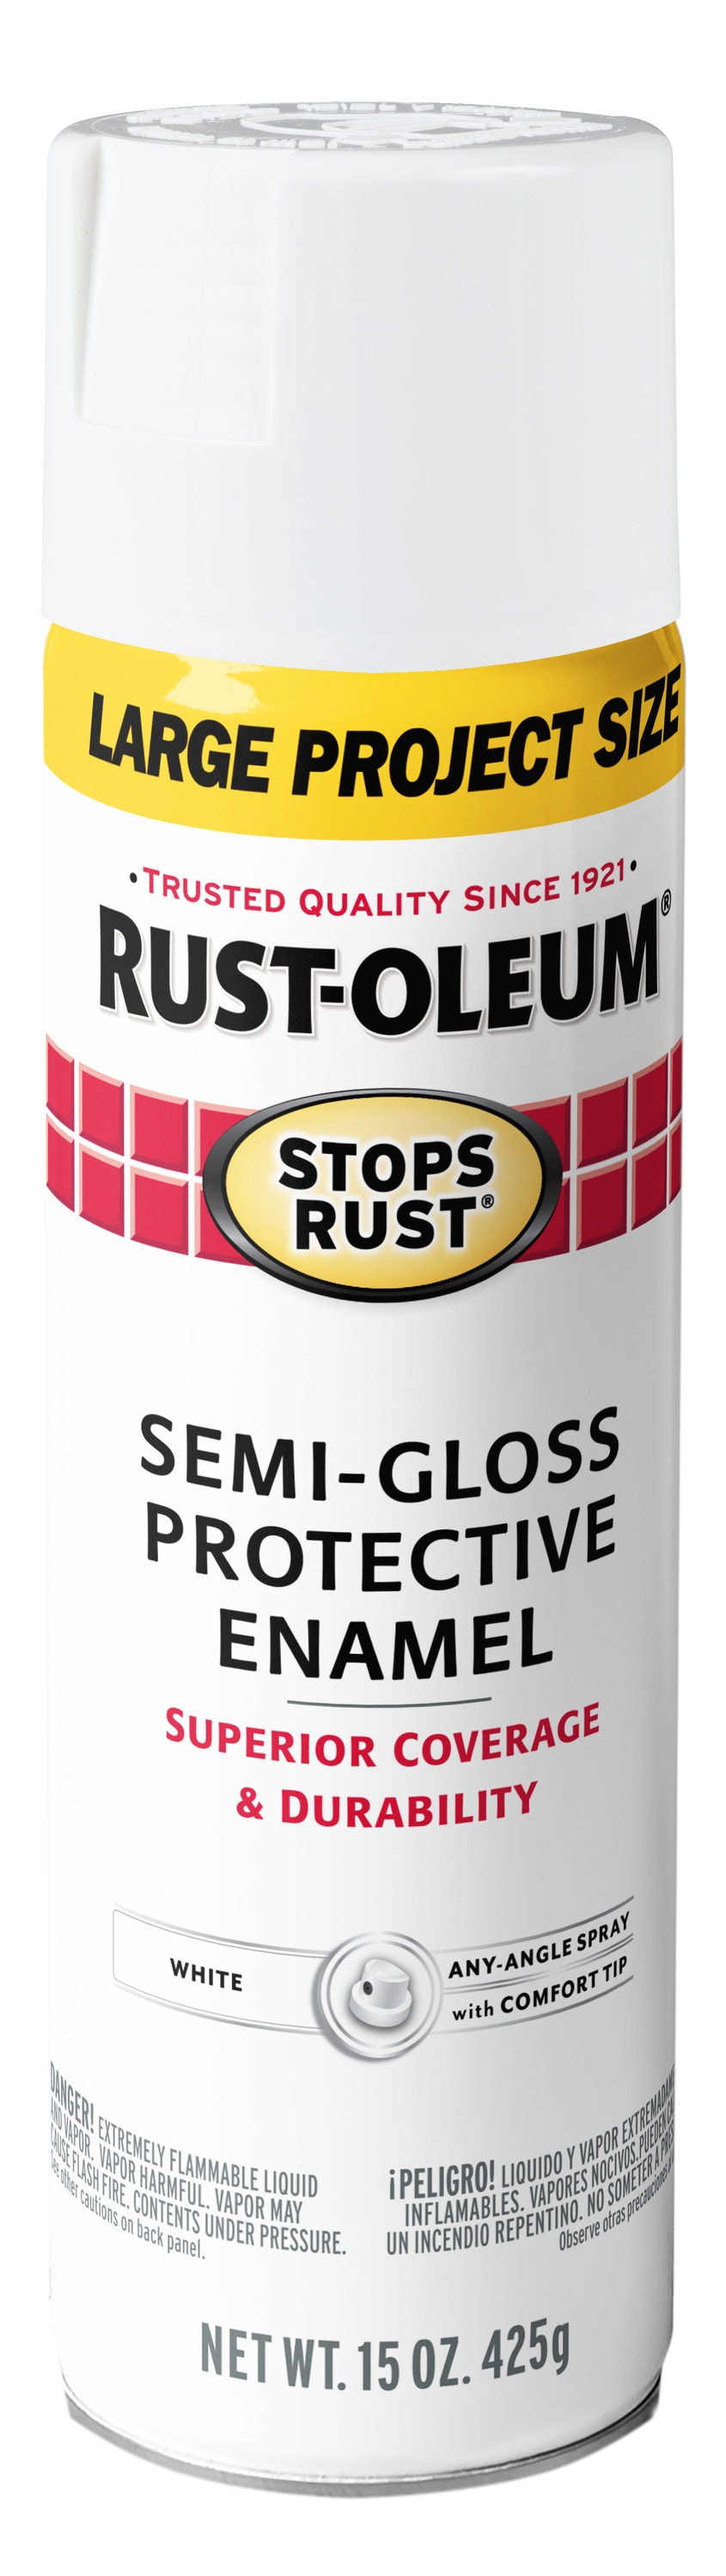 Rust-Oleum Stops Rust Gloss White Enamel Oil-based Interior Paint (1-quart)